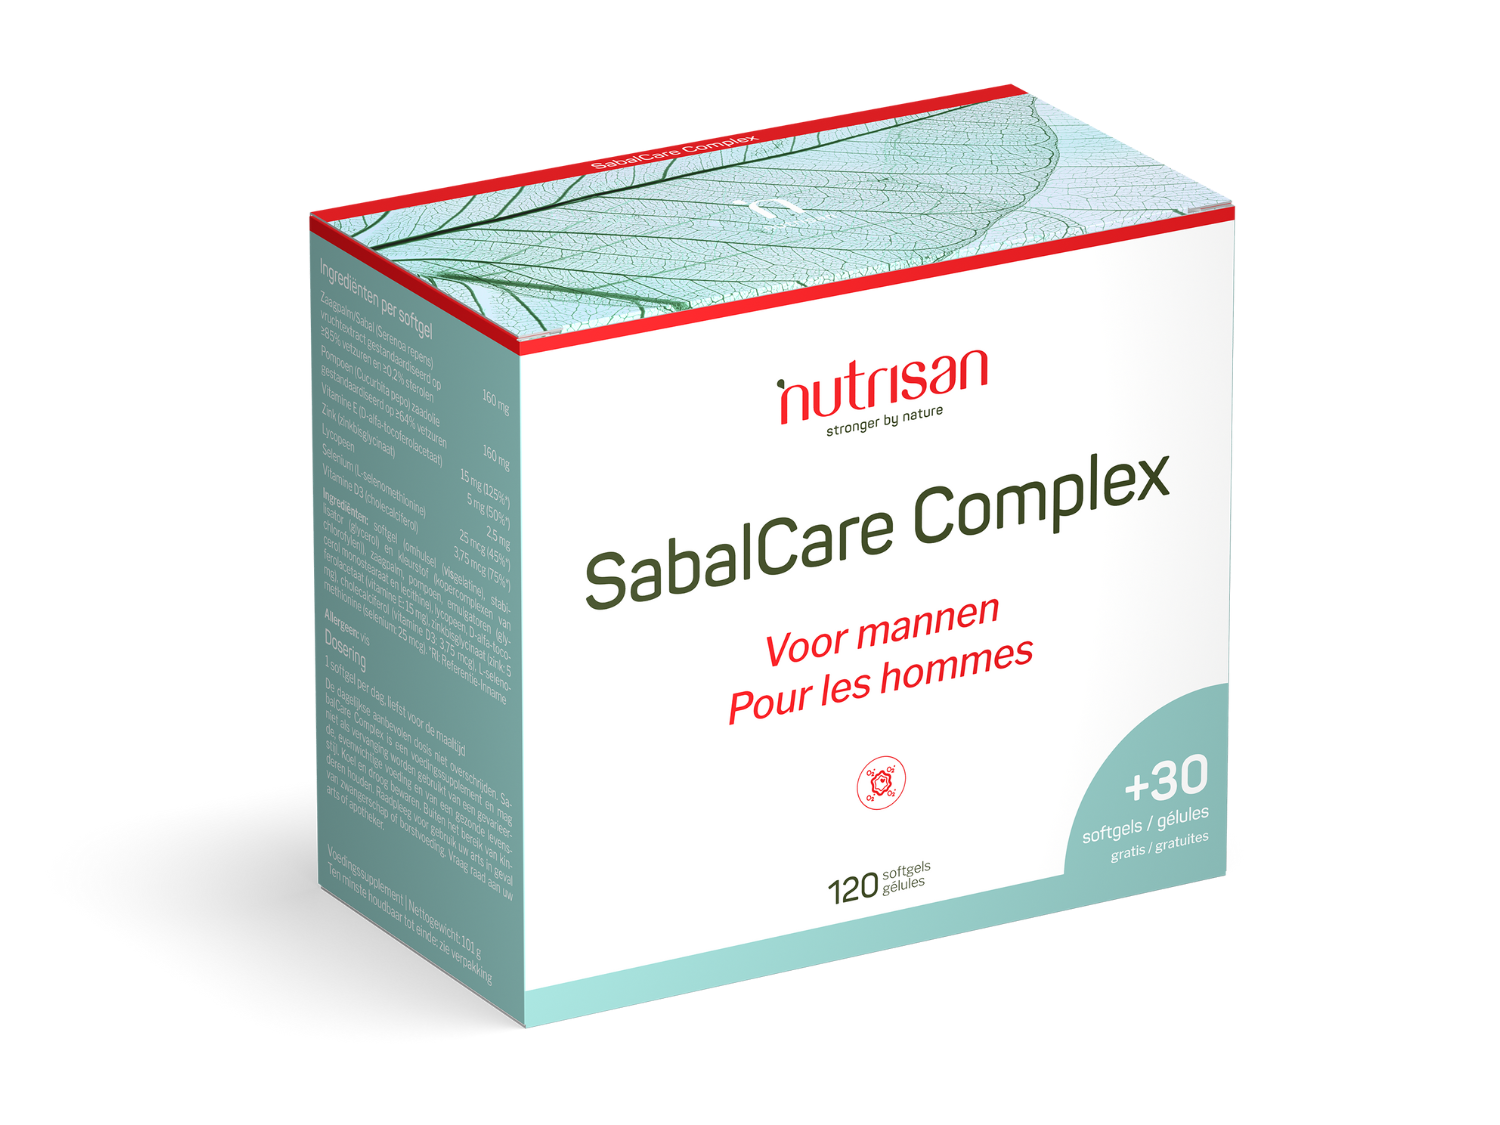 SabalCare Complex - 120 softgels + 30 gratis